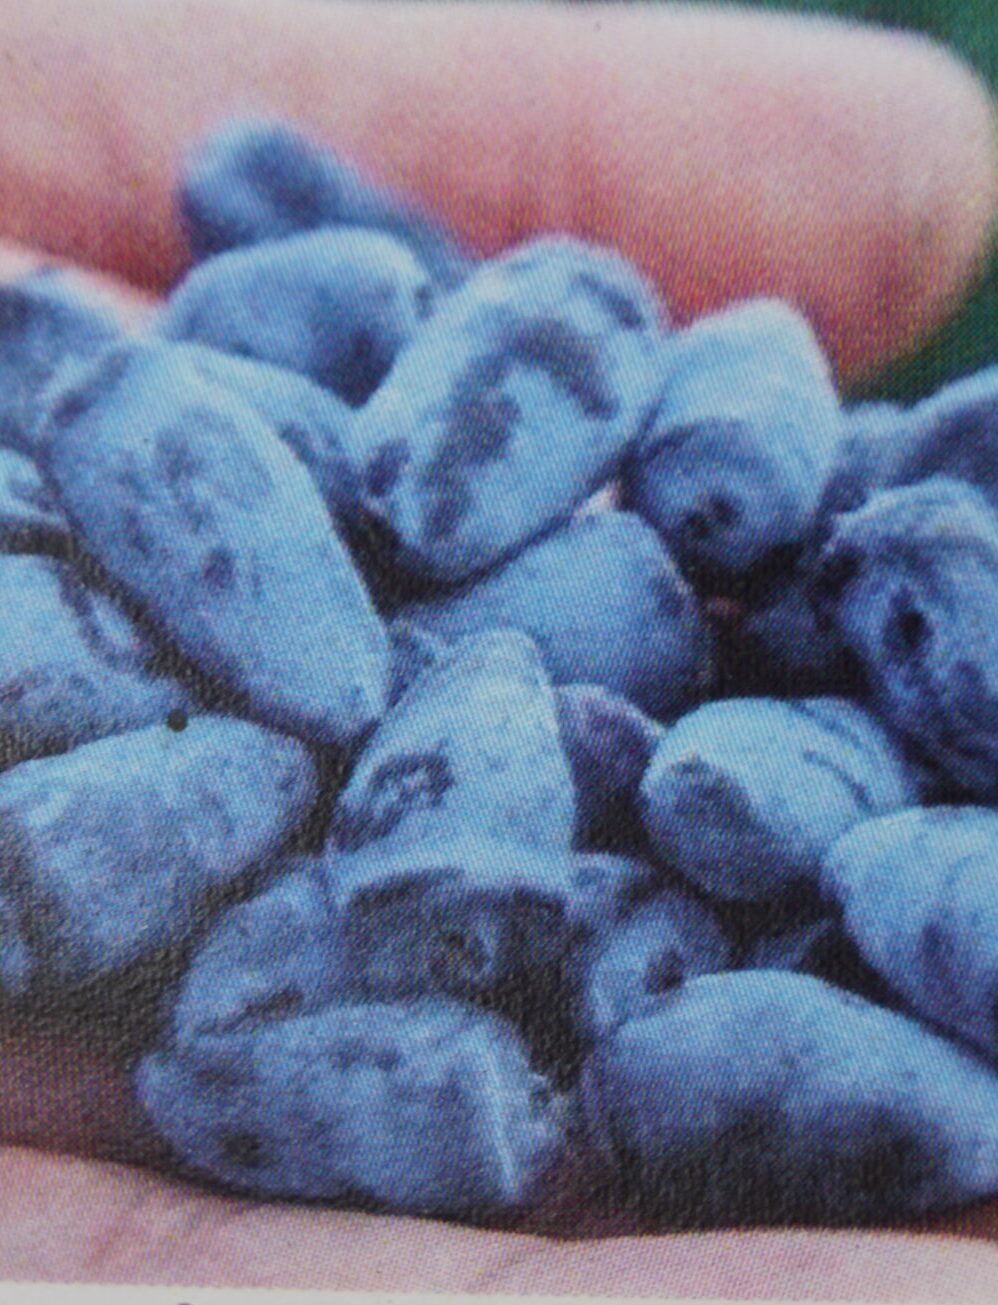 Honningbærbusk Blue Rock (Lonicera Kamtschatica Blue Rock)